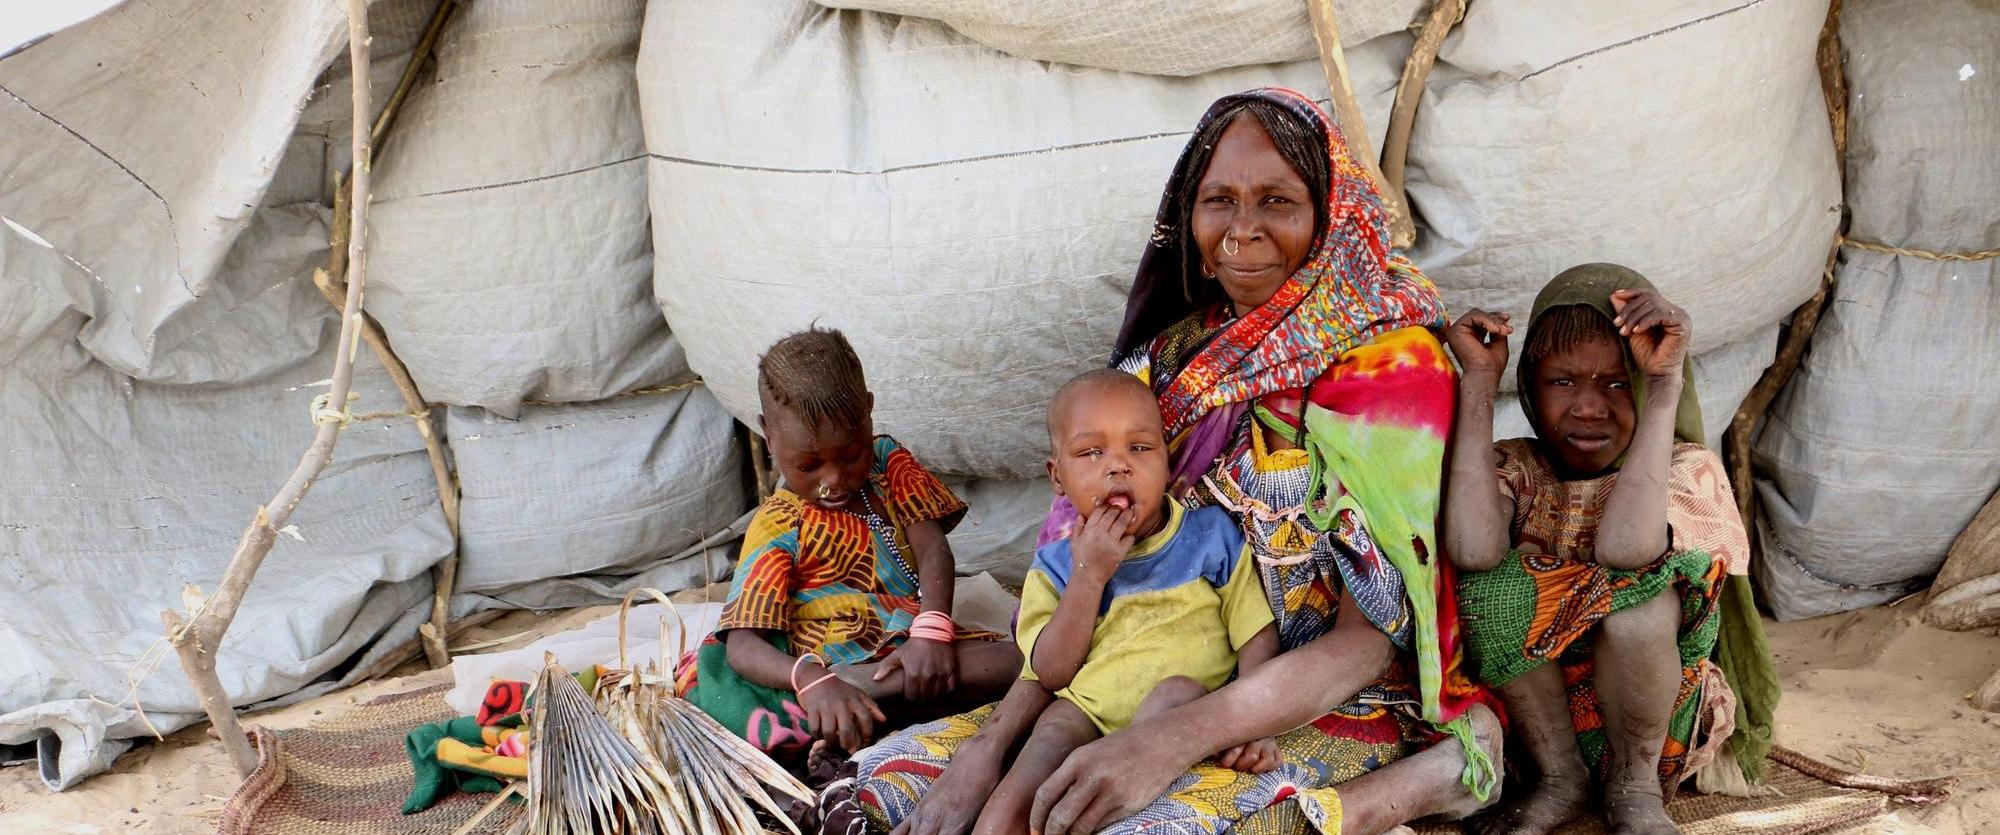 Environ 250 familles vivent actuellement dans des conditions précaires sur les rives du lac de Koulkimé, au Tchad.